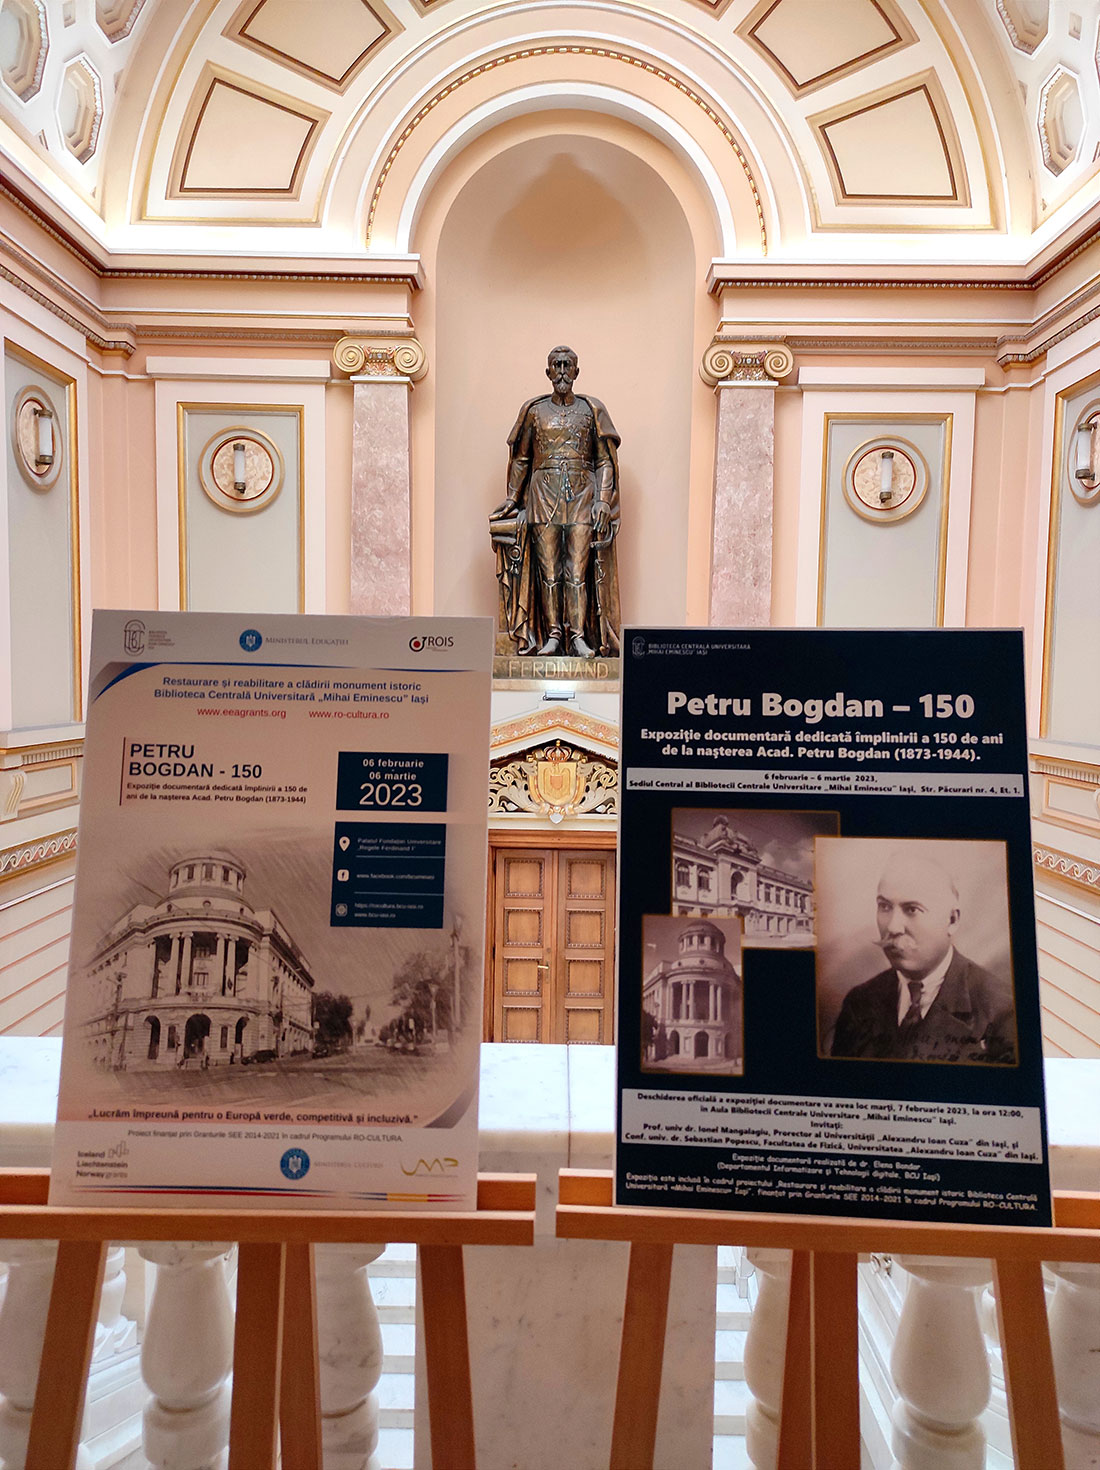 Petru Bogdan - 150, Expoziţie documentară dedicată împlinirii a 150 de ani de la naşterea Acad. Petru Bogdan (1873-1944)